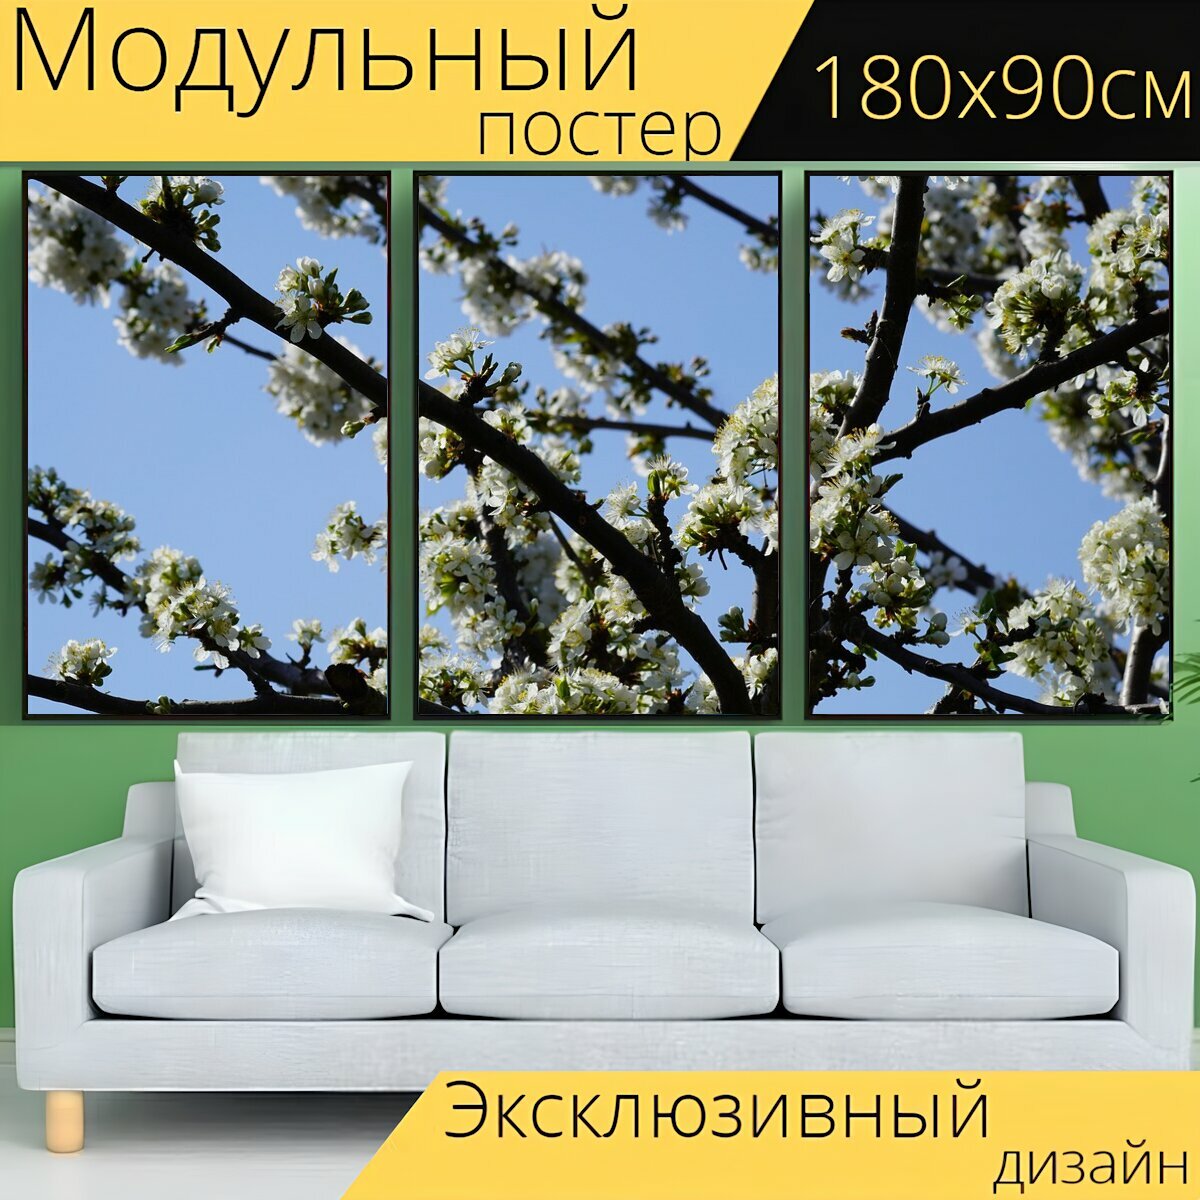 Модульный постер "Вишни в цвету, весна, вишневое дерево" 180 x 90 см. для интерьера